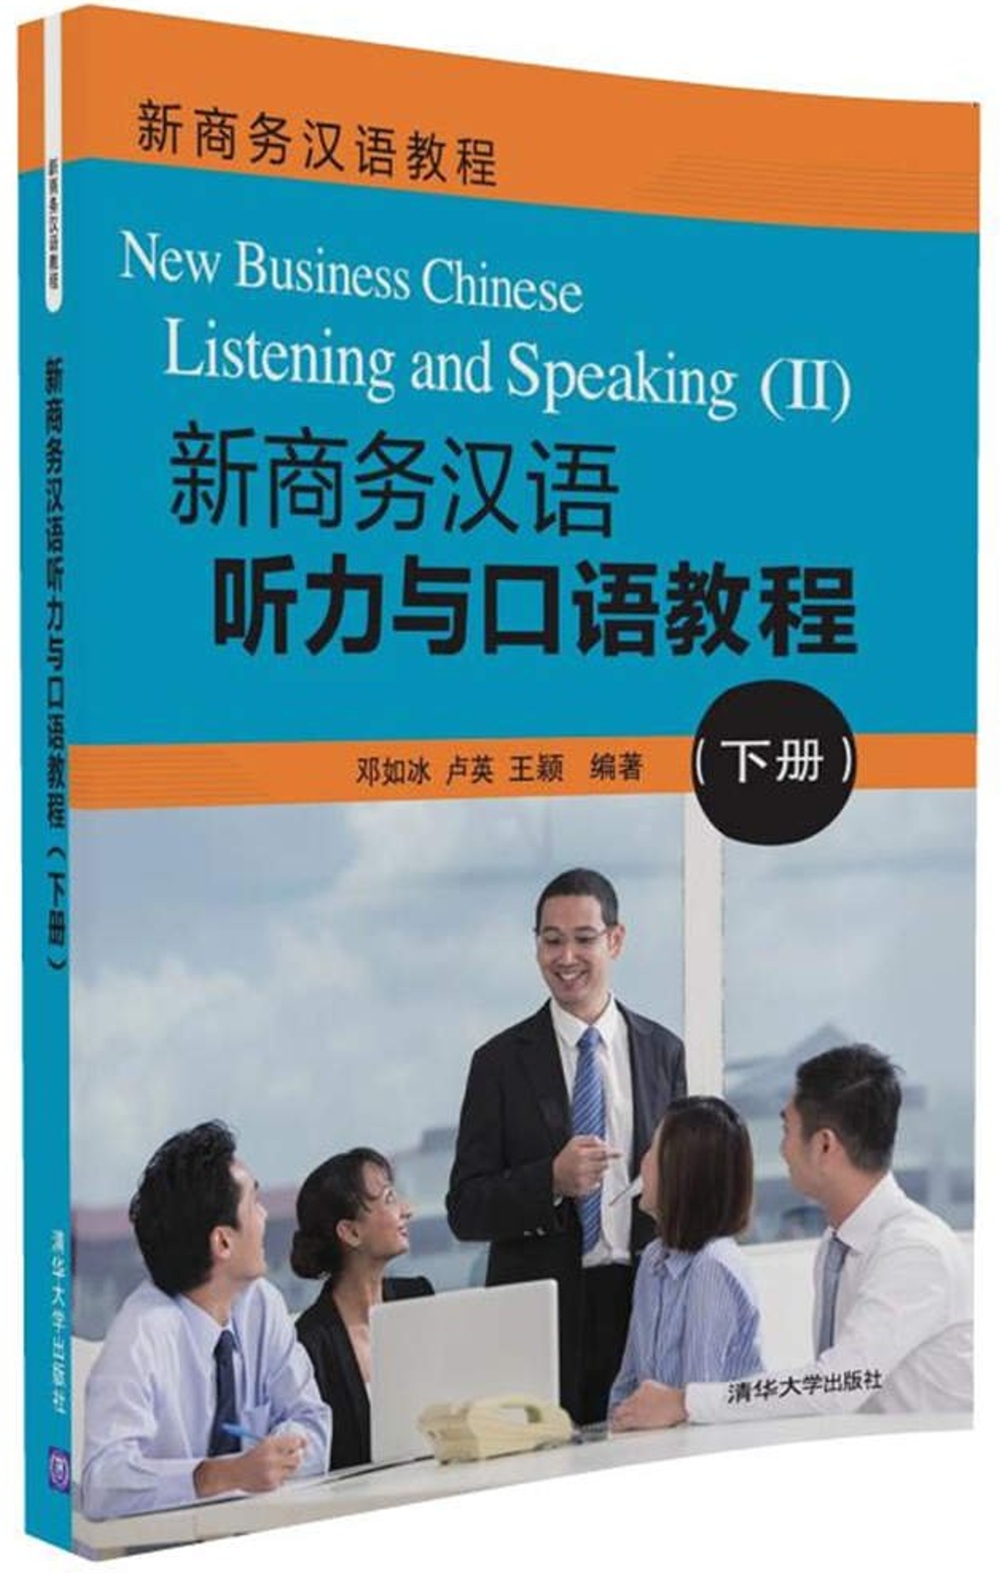 新商務漢語聽力與口語教程(下冊)